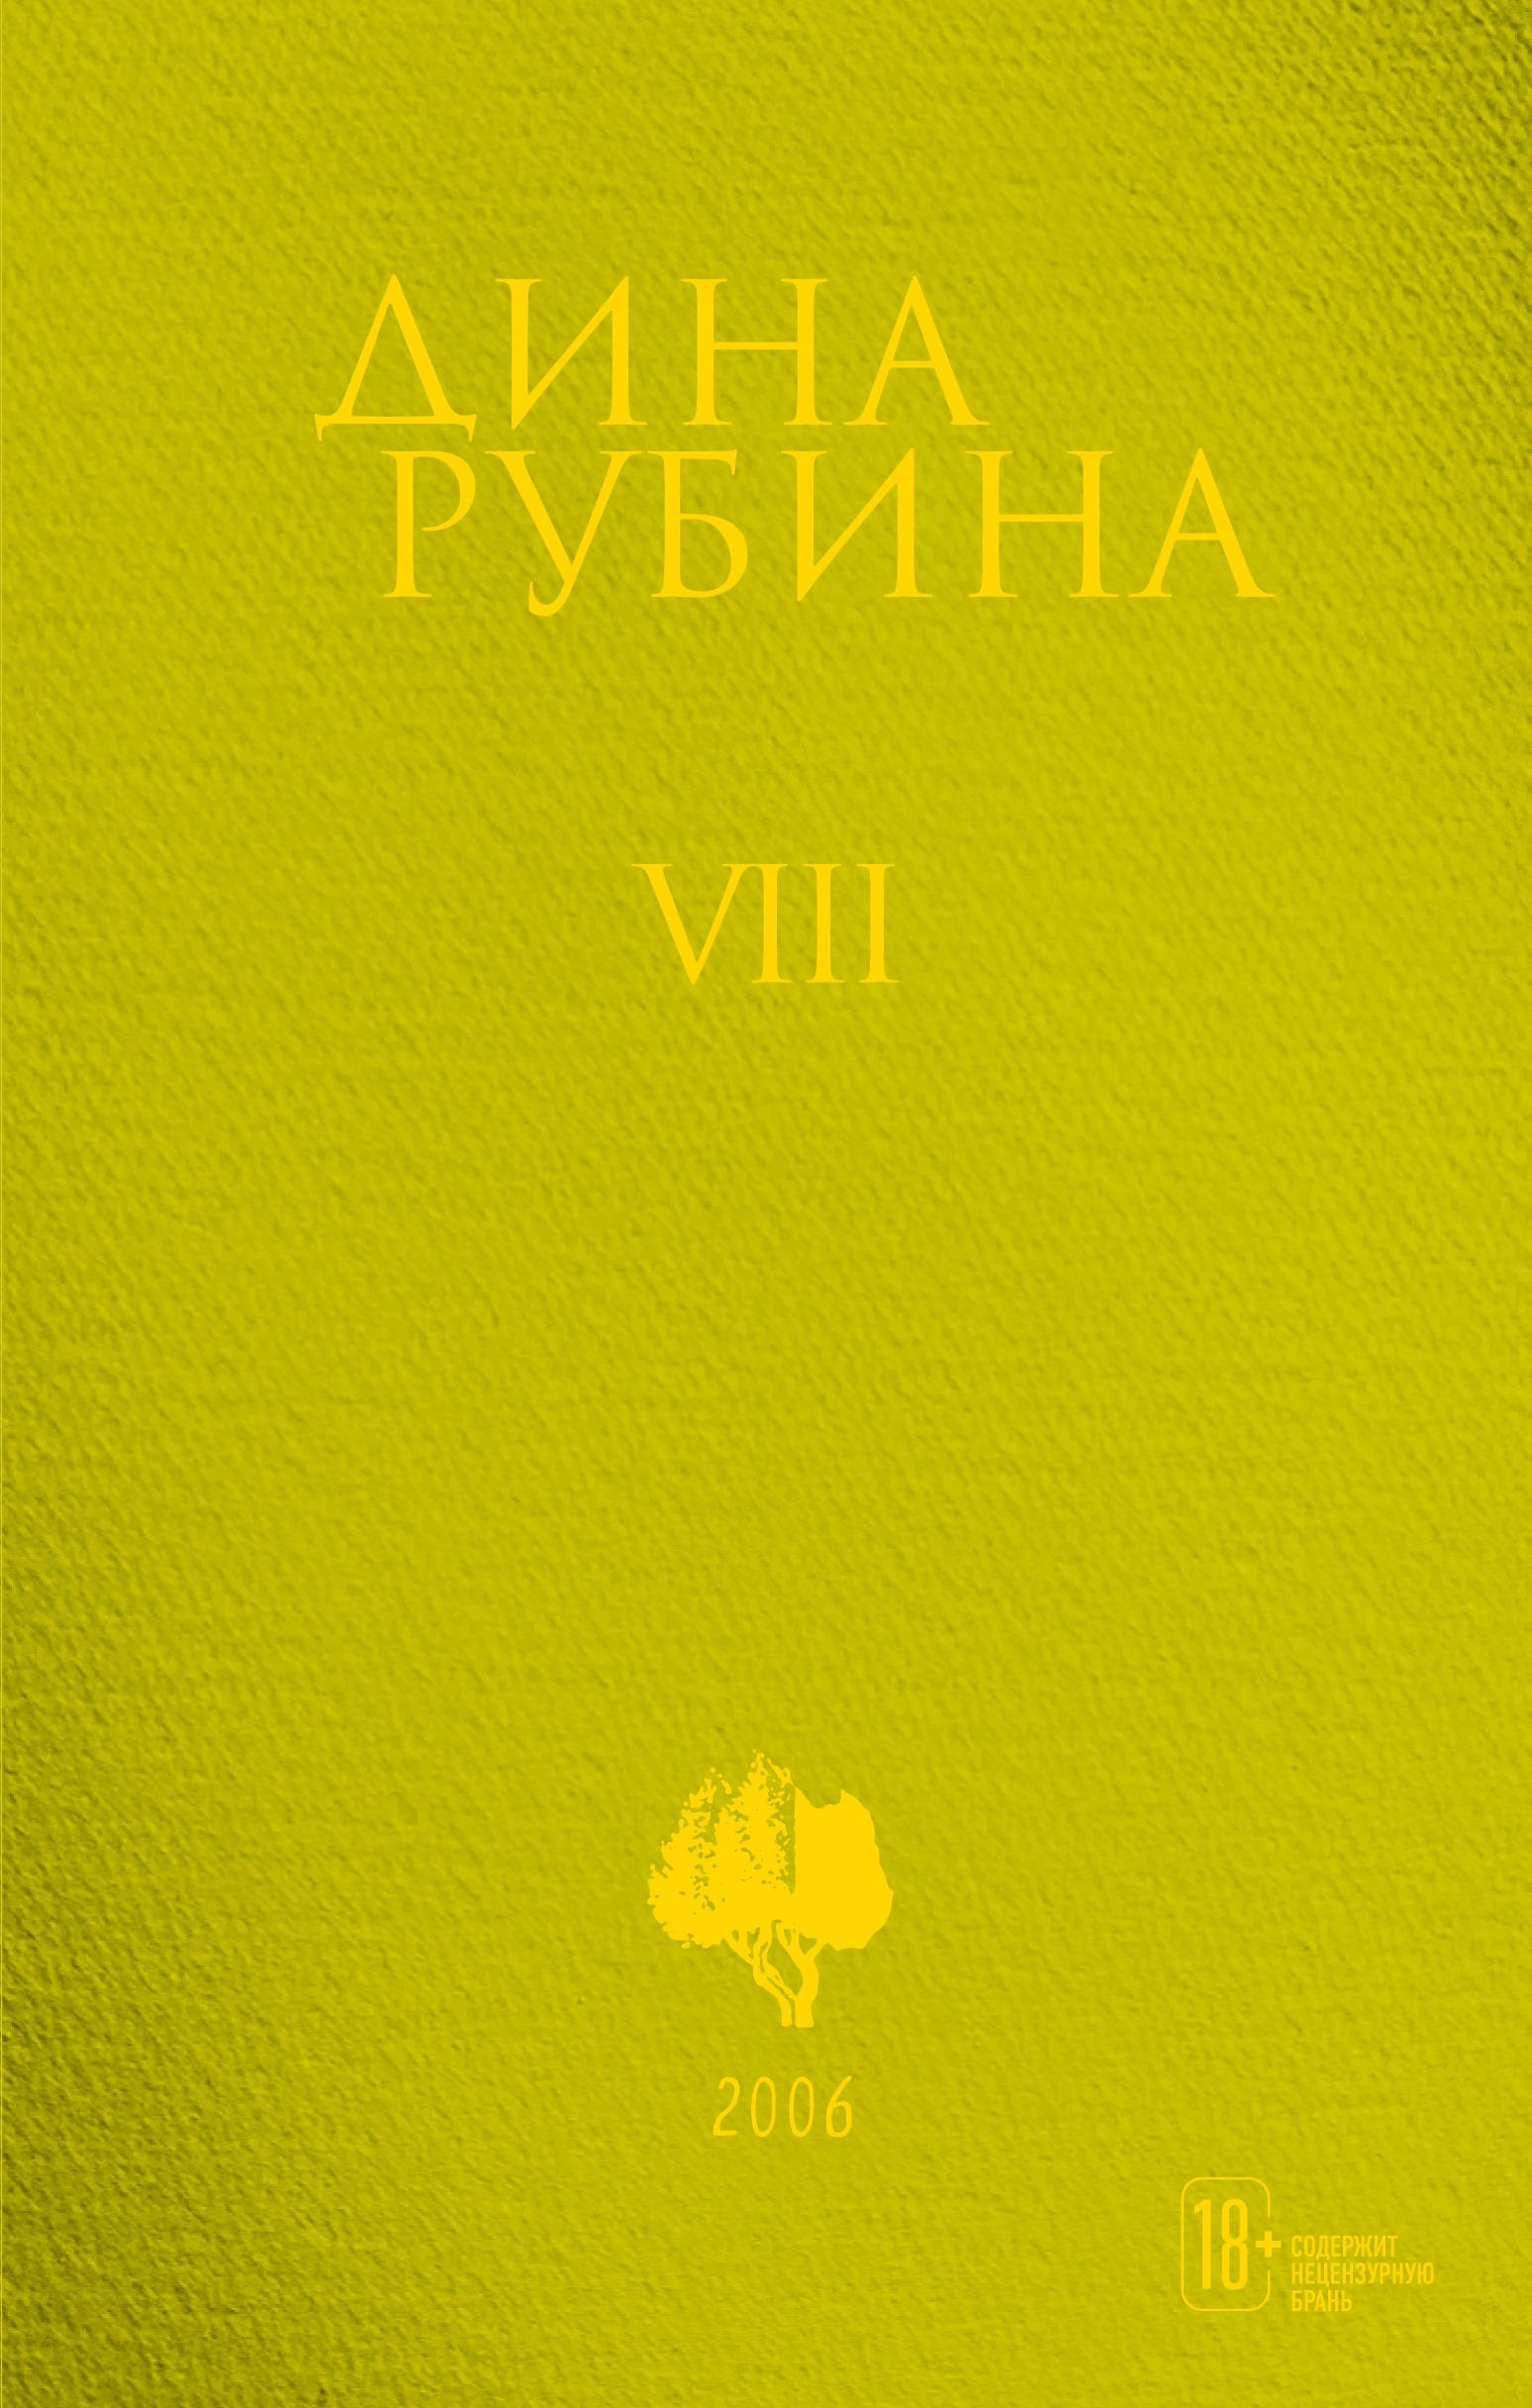 Book “Том 8” by Дина Рубина — October 22, 2021